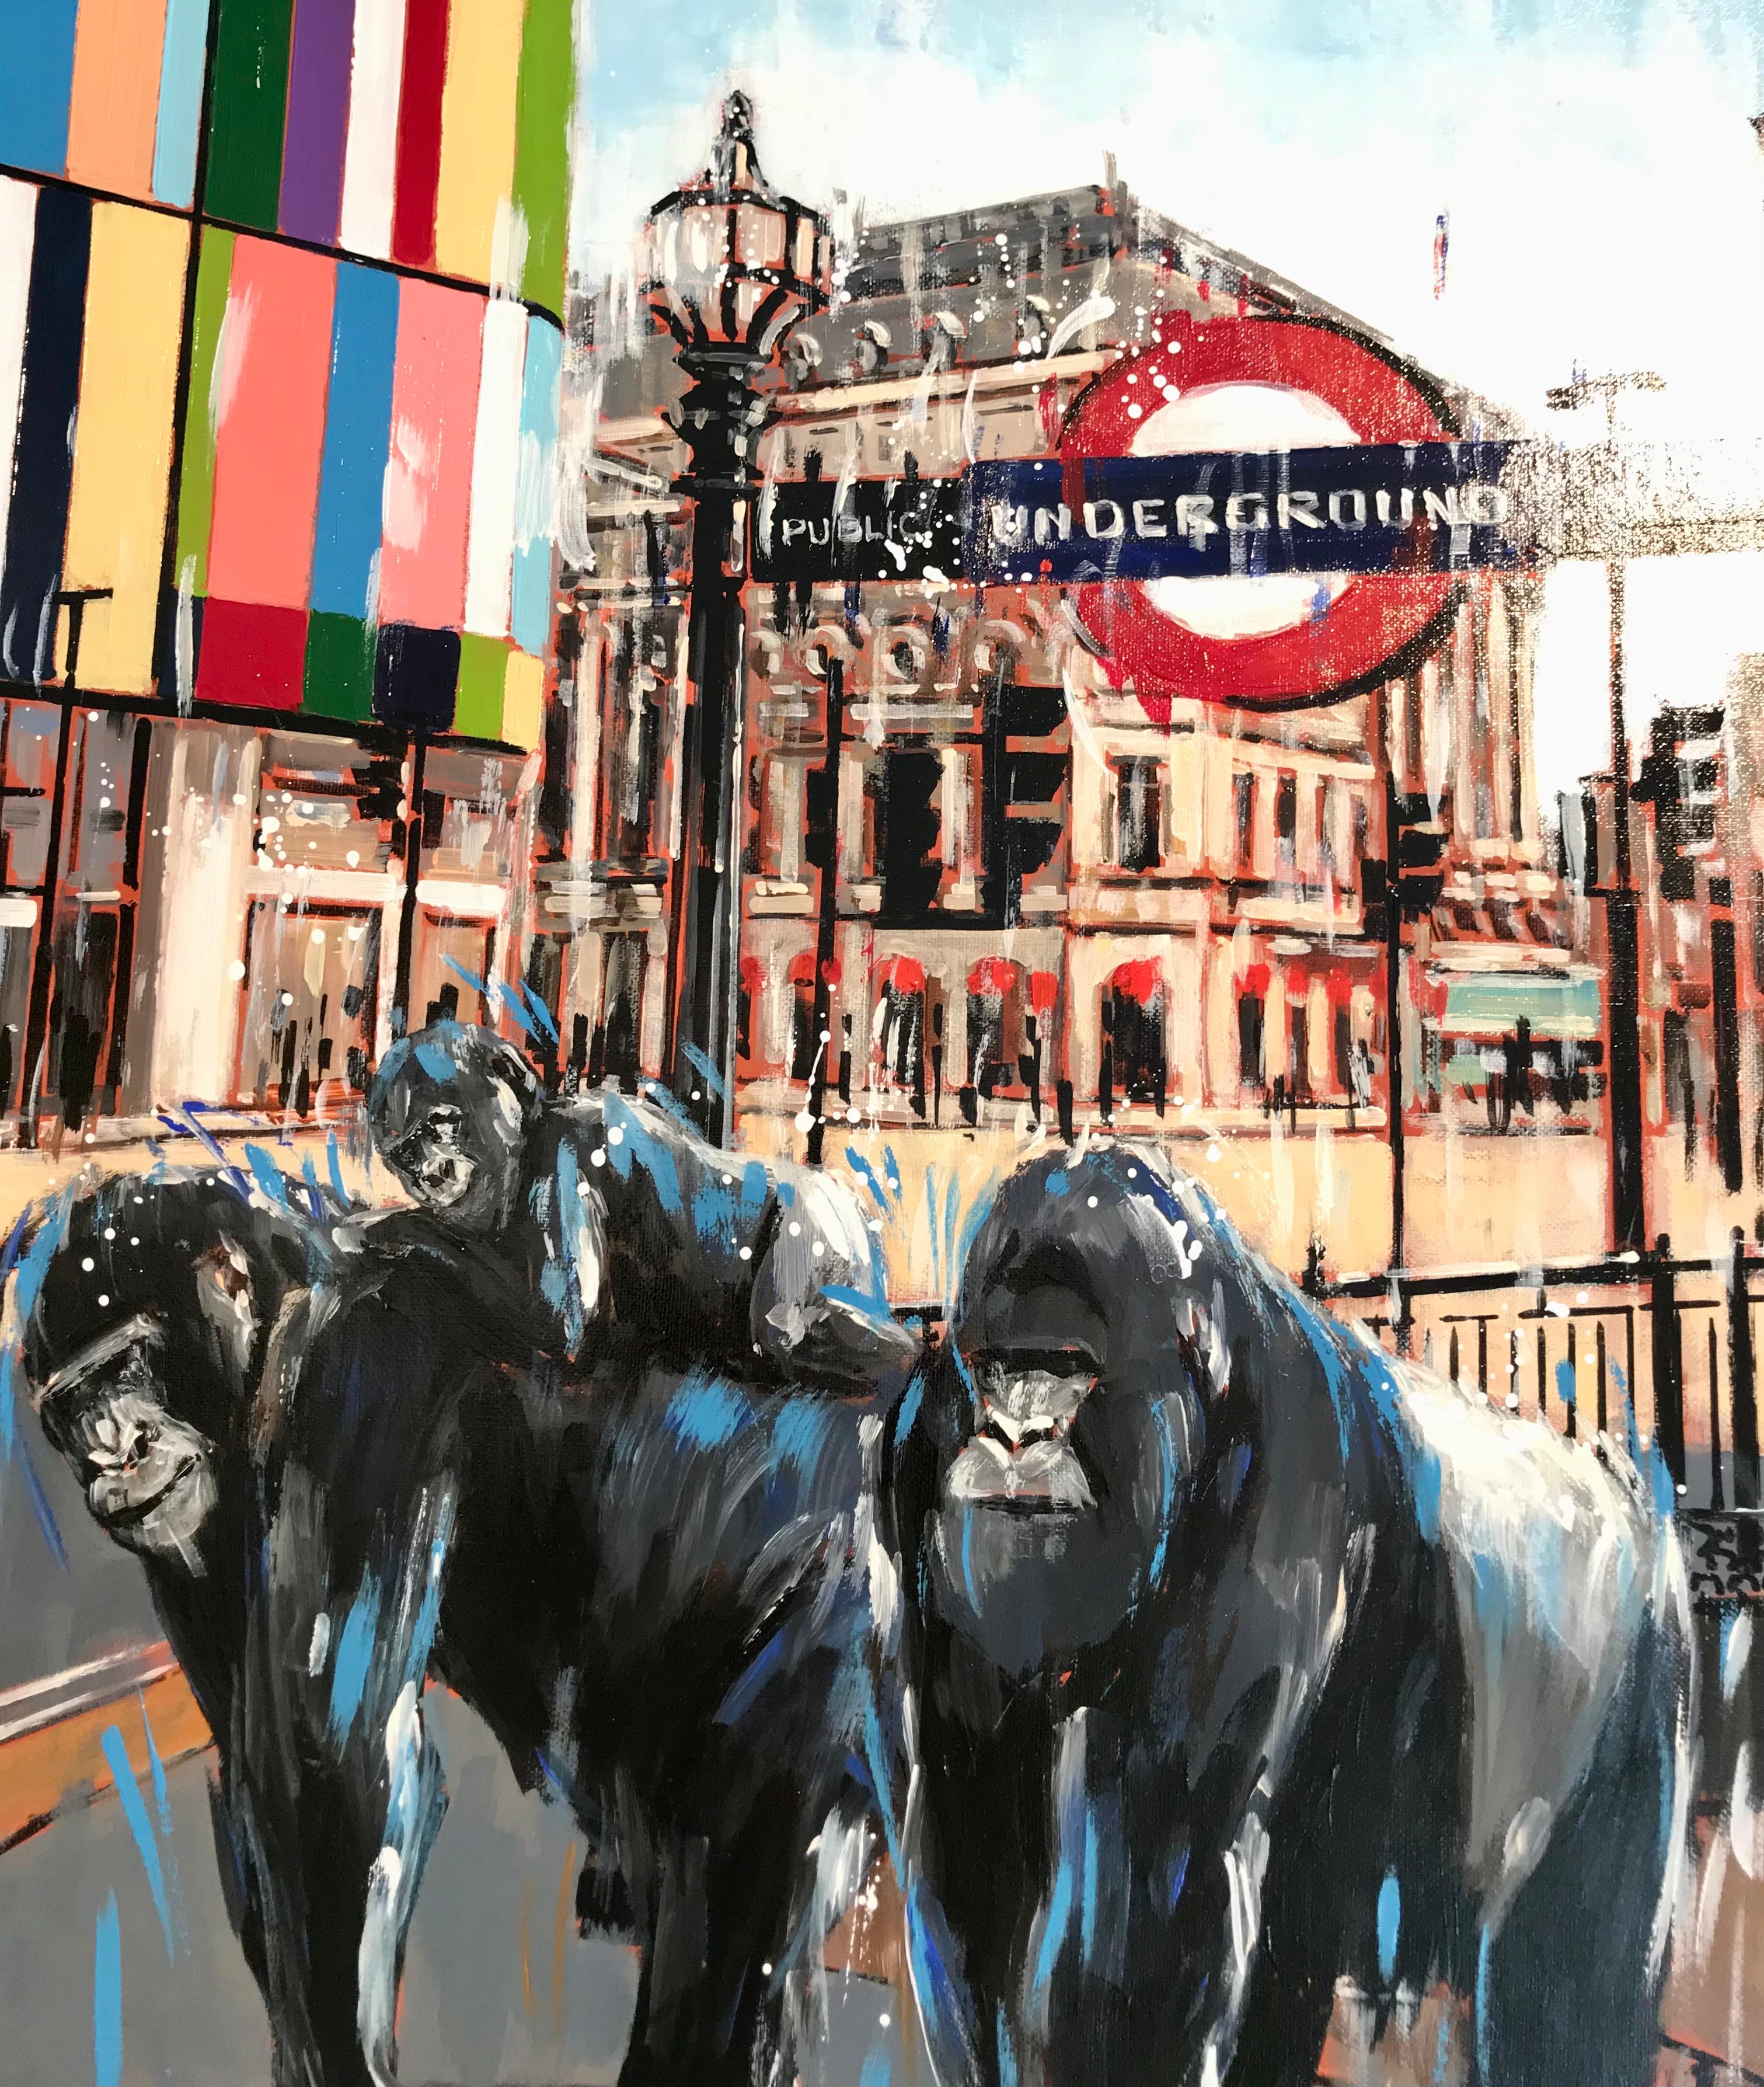 Dans cette peinture surréaliste contemporaine, Nathan juxtapose une scène urbaine familière et une entrée de métro classique à la présence inhabituelle de singes. Cette charmante scène onirique est ornée d'éclaboussures de peinture abstraites